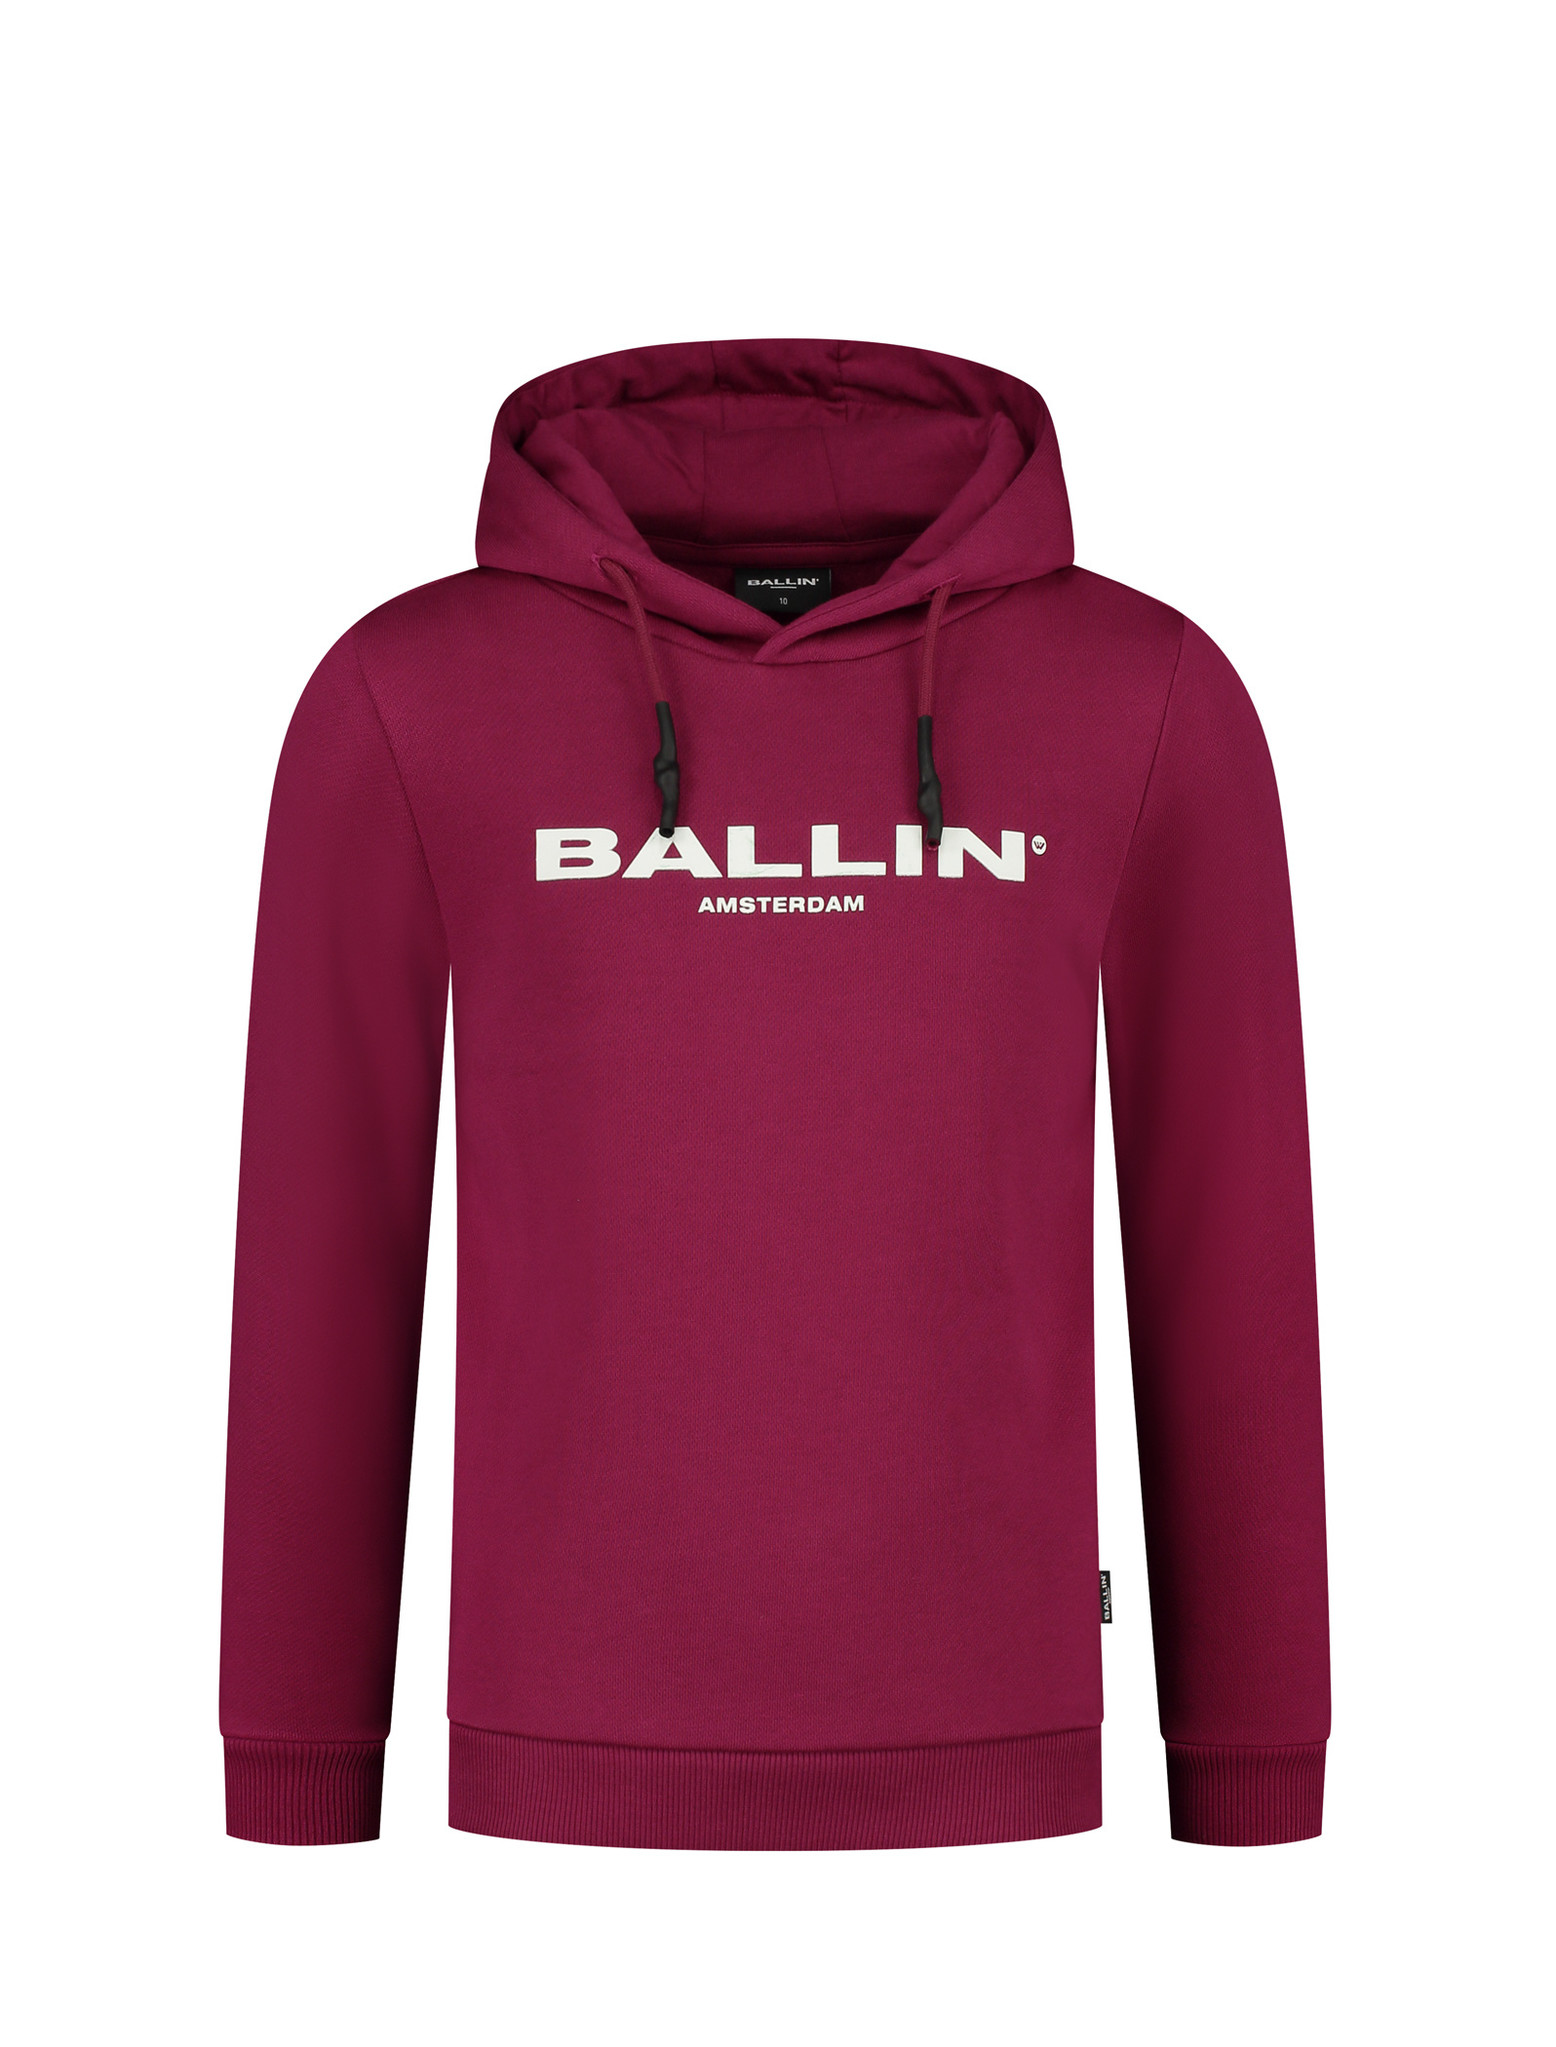 Ballin Jongens hoodie - Fuchsia